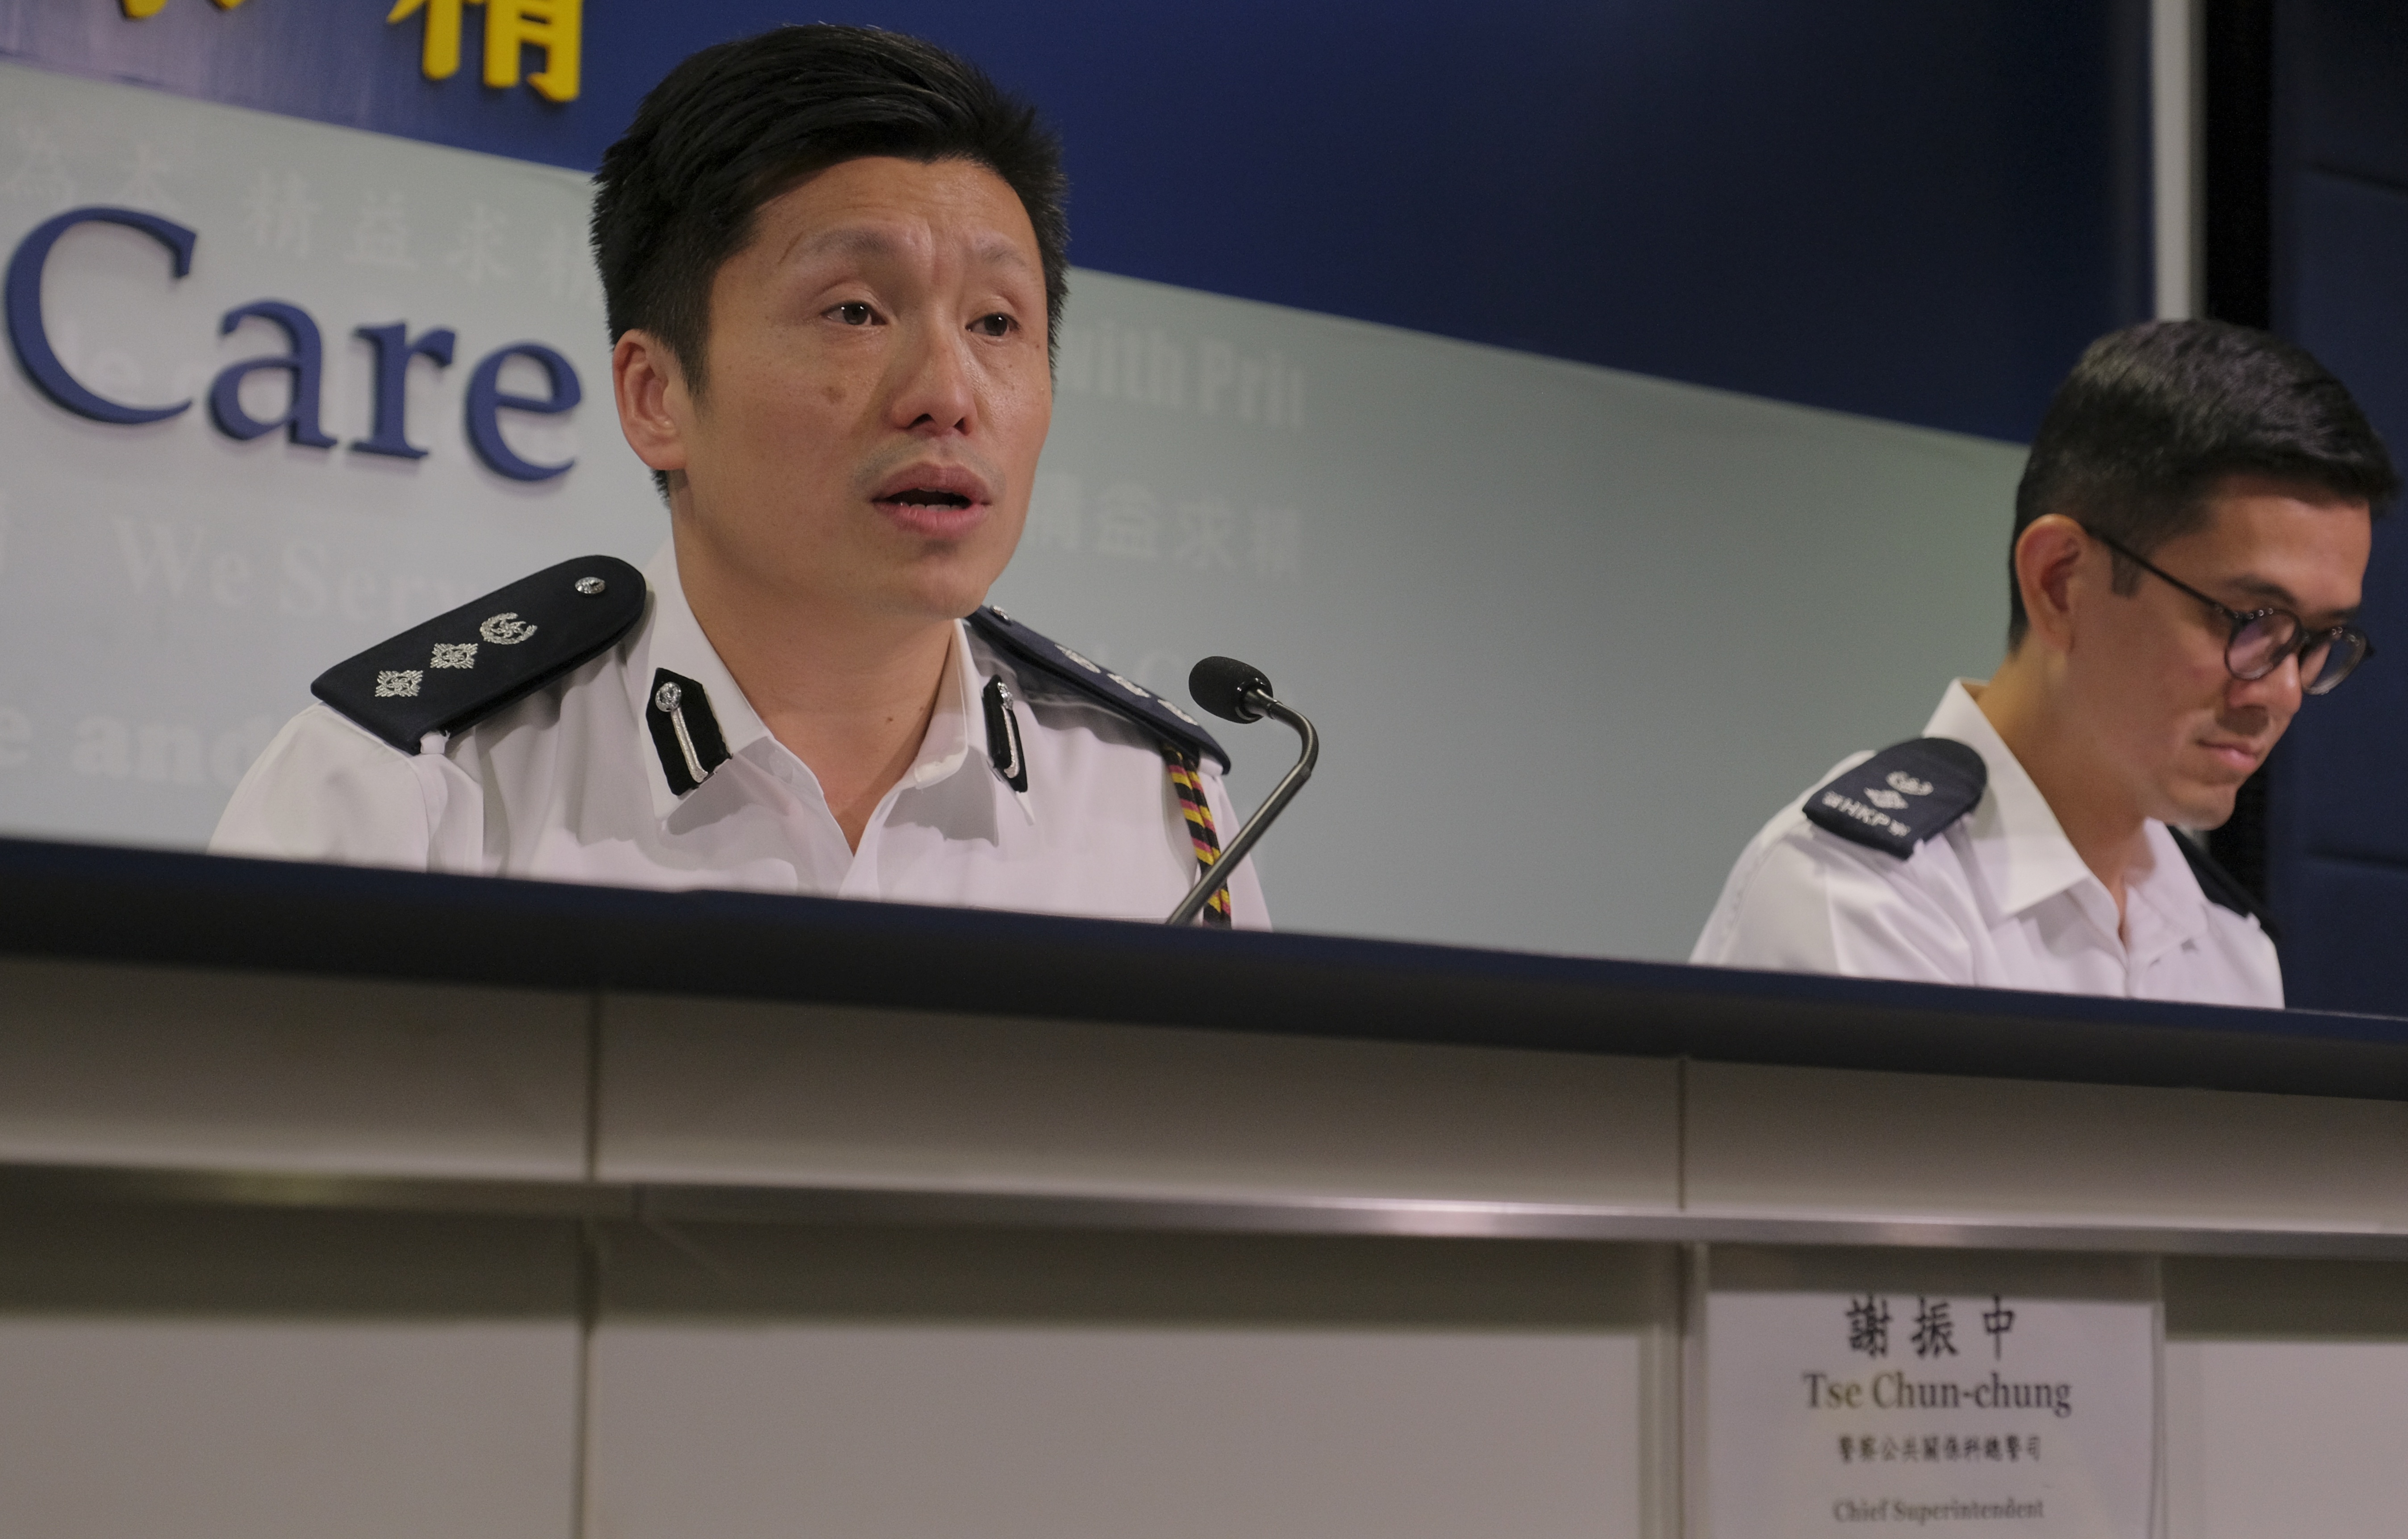 香港警察为了维护法纪受伤也值得